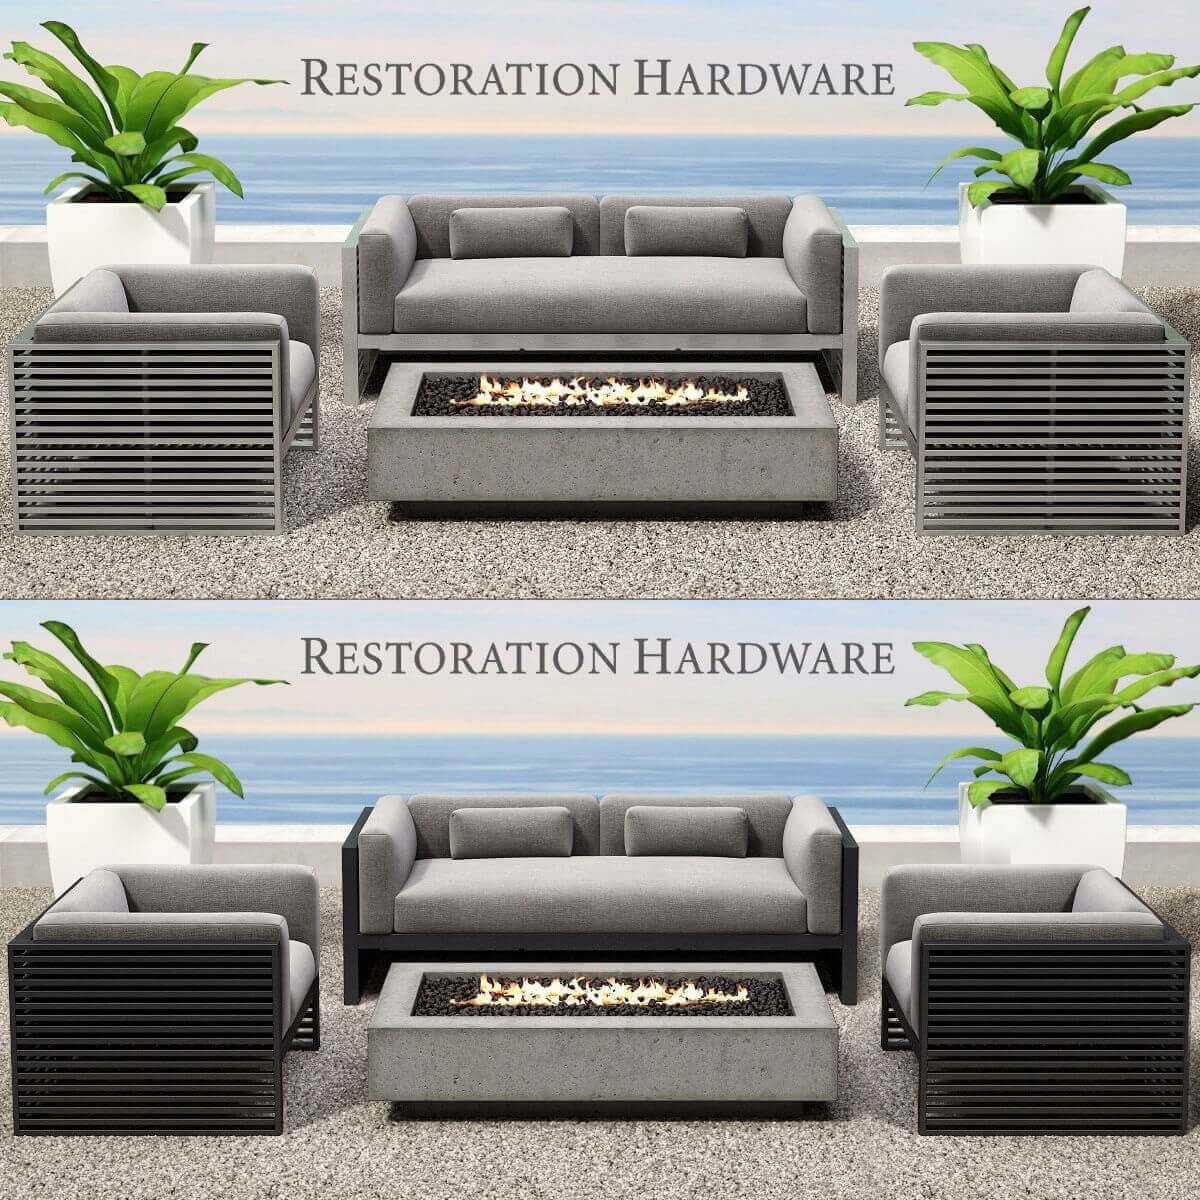 Restoration Hardware Outdoor Furniture - Home Garden New Restoration